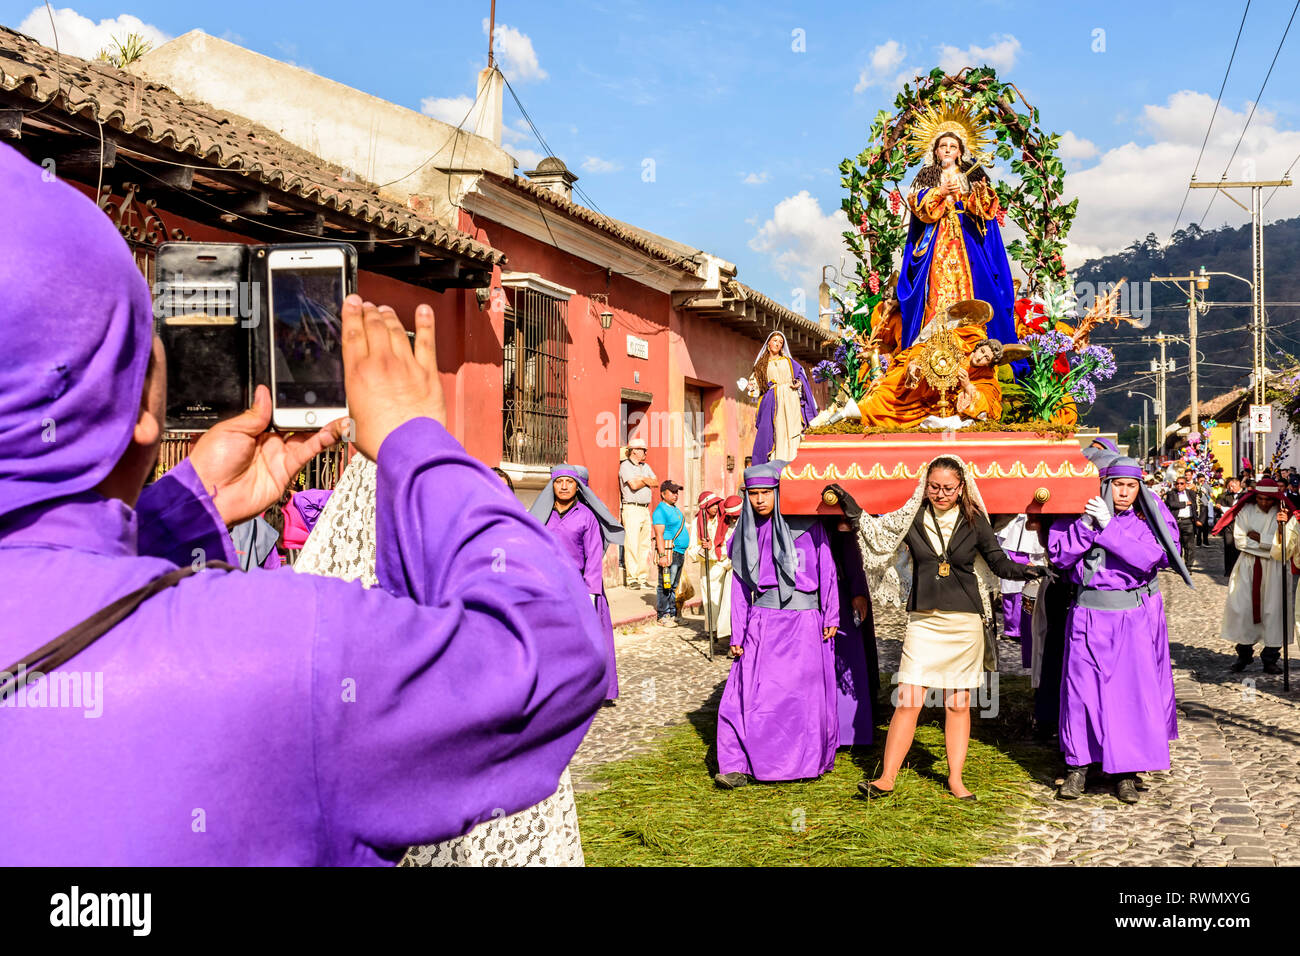 Antigua, Guatemala - 18. Februar 2018: Die fastenzeit Prozession in der kolonialen Stadt mit dem berühmtesten Feierlichkeiten zur Karwoche in Lateinamerika. Stockfoto